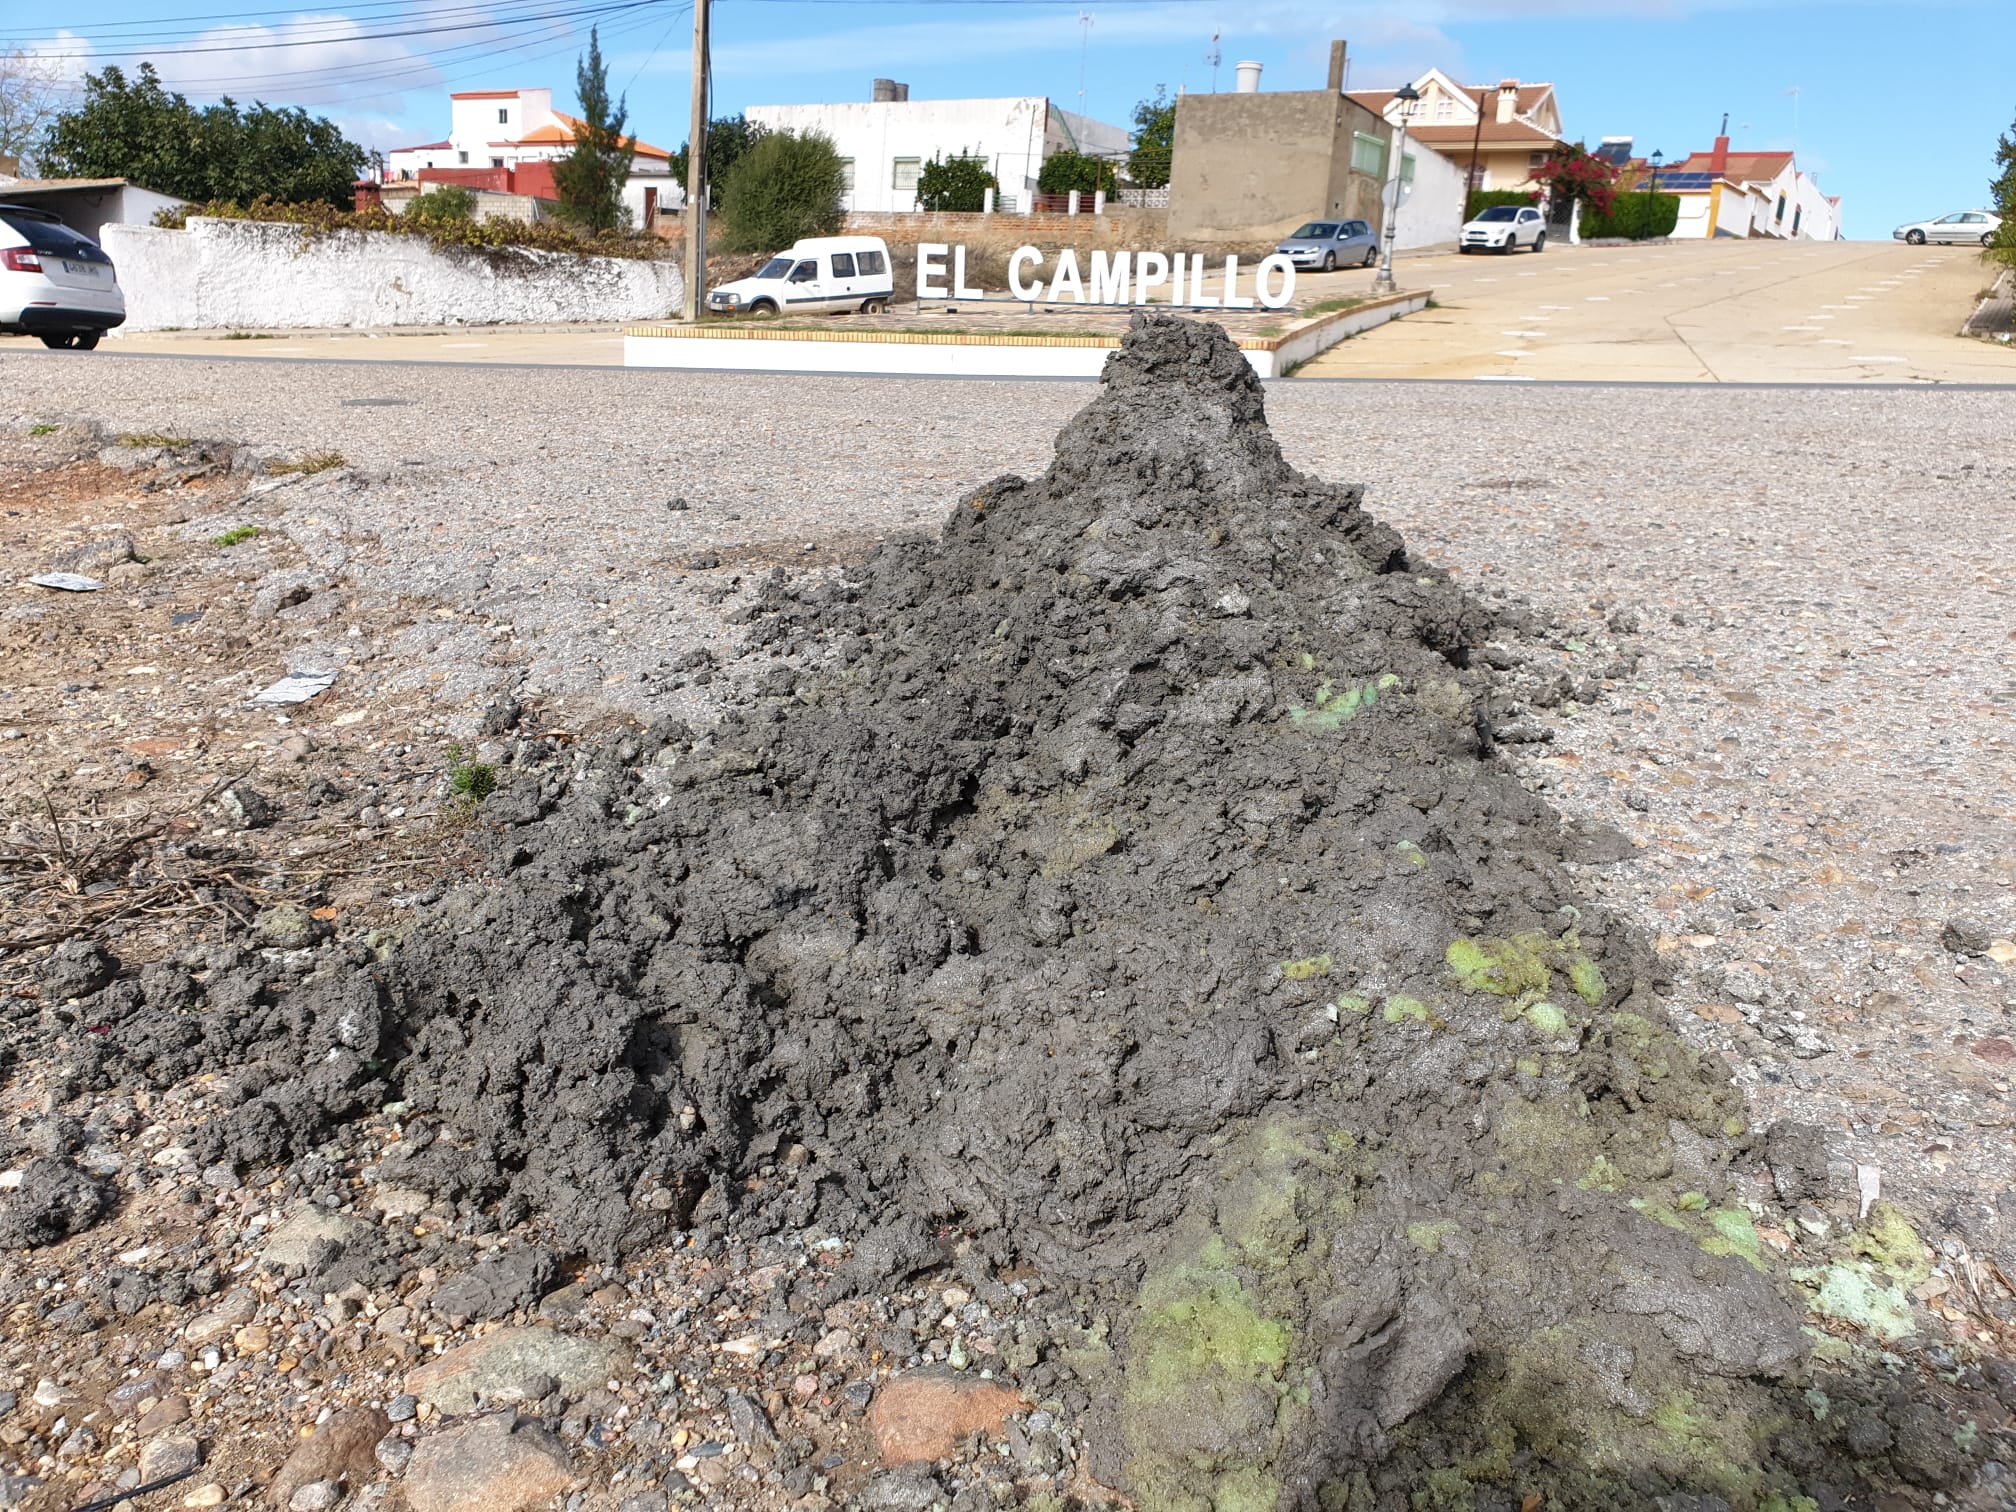 Montaña de residuos en El Campillo, Huelva.